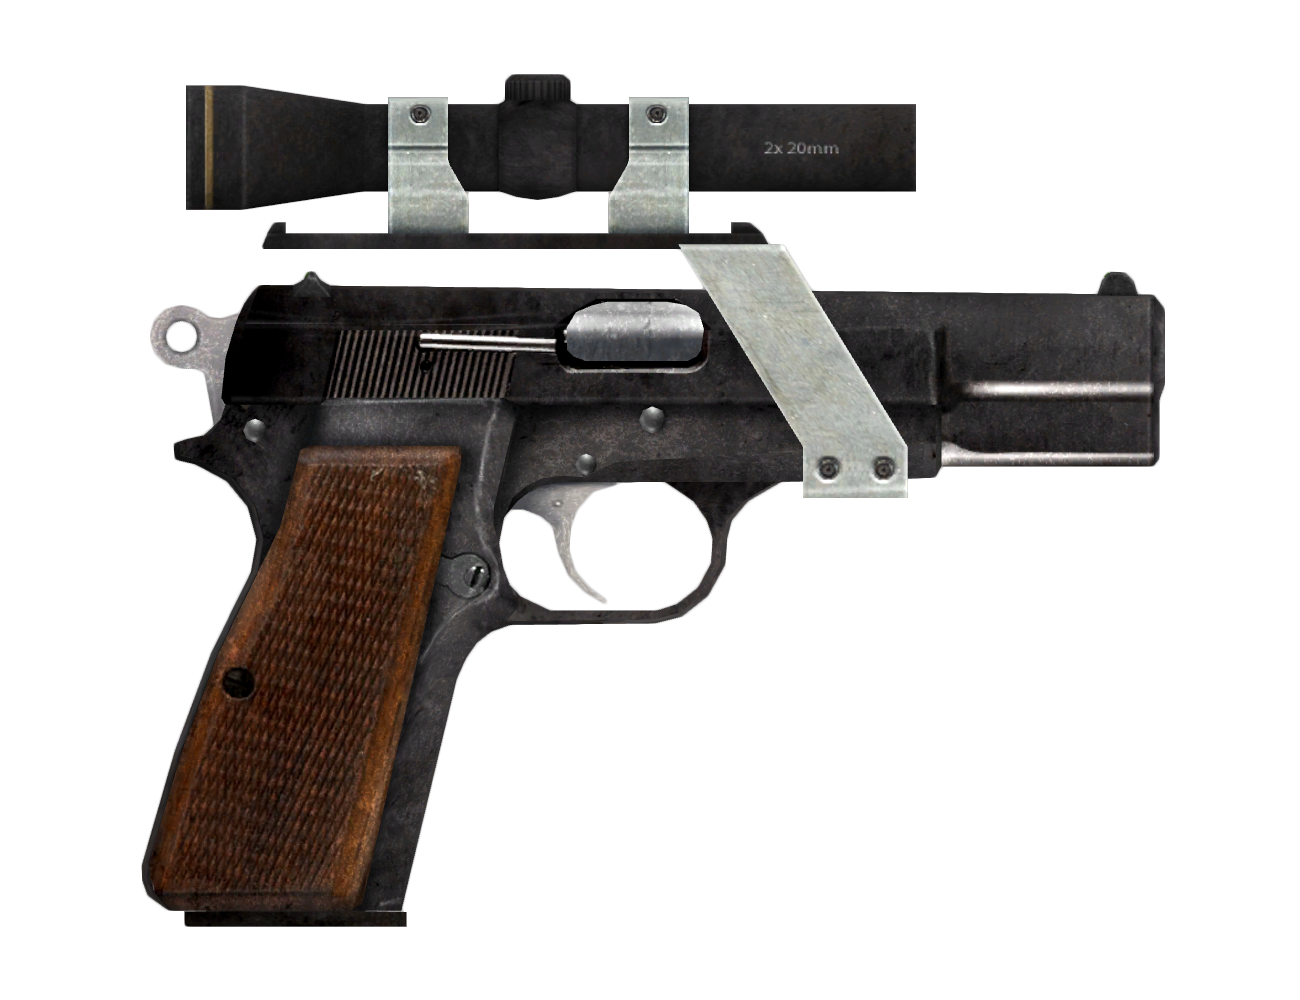 9mm pistol new vegas